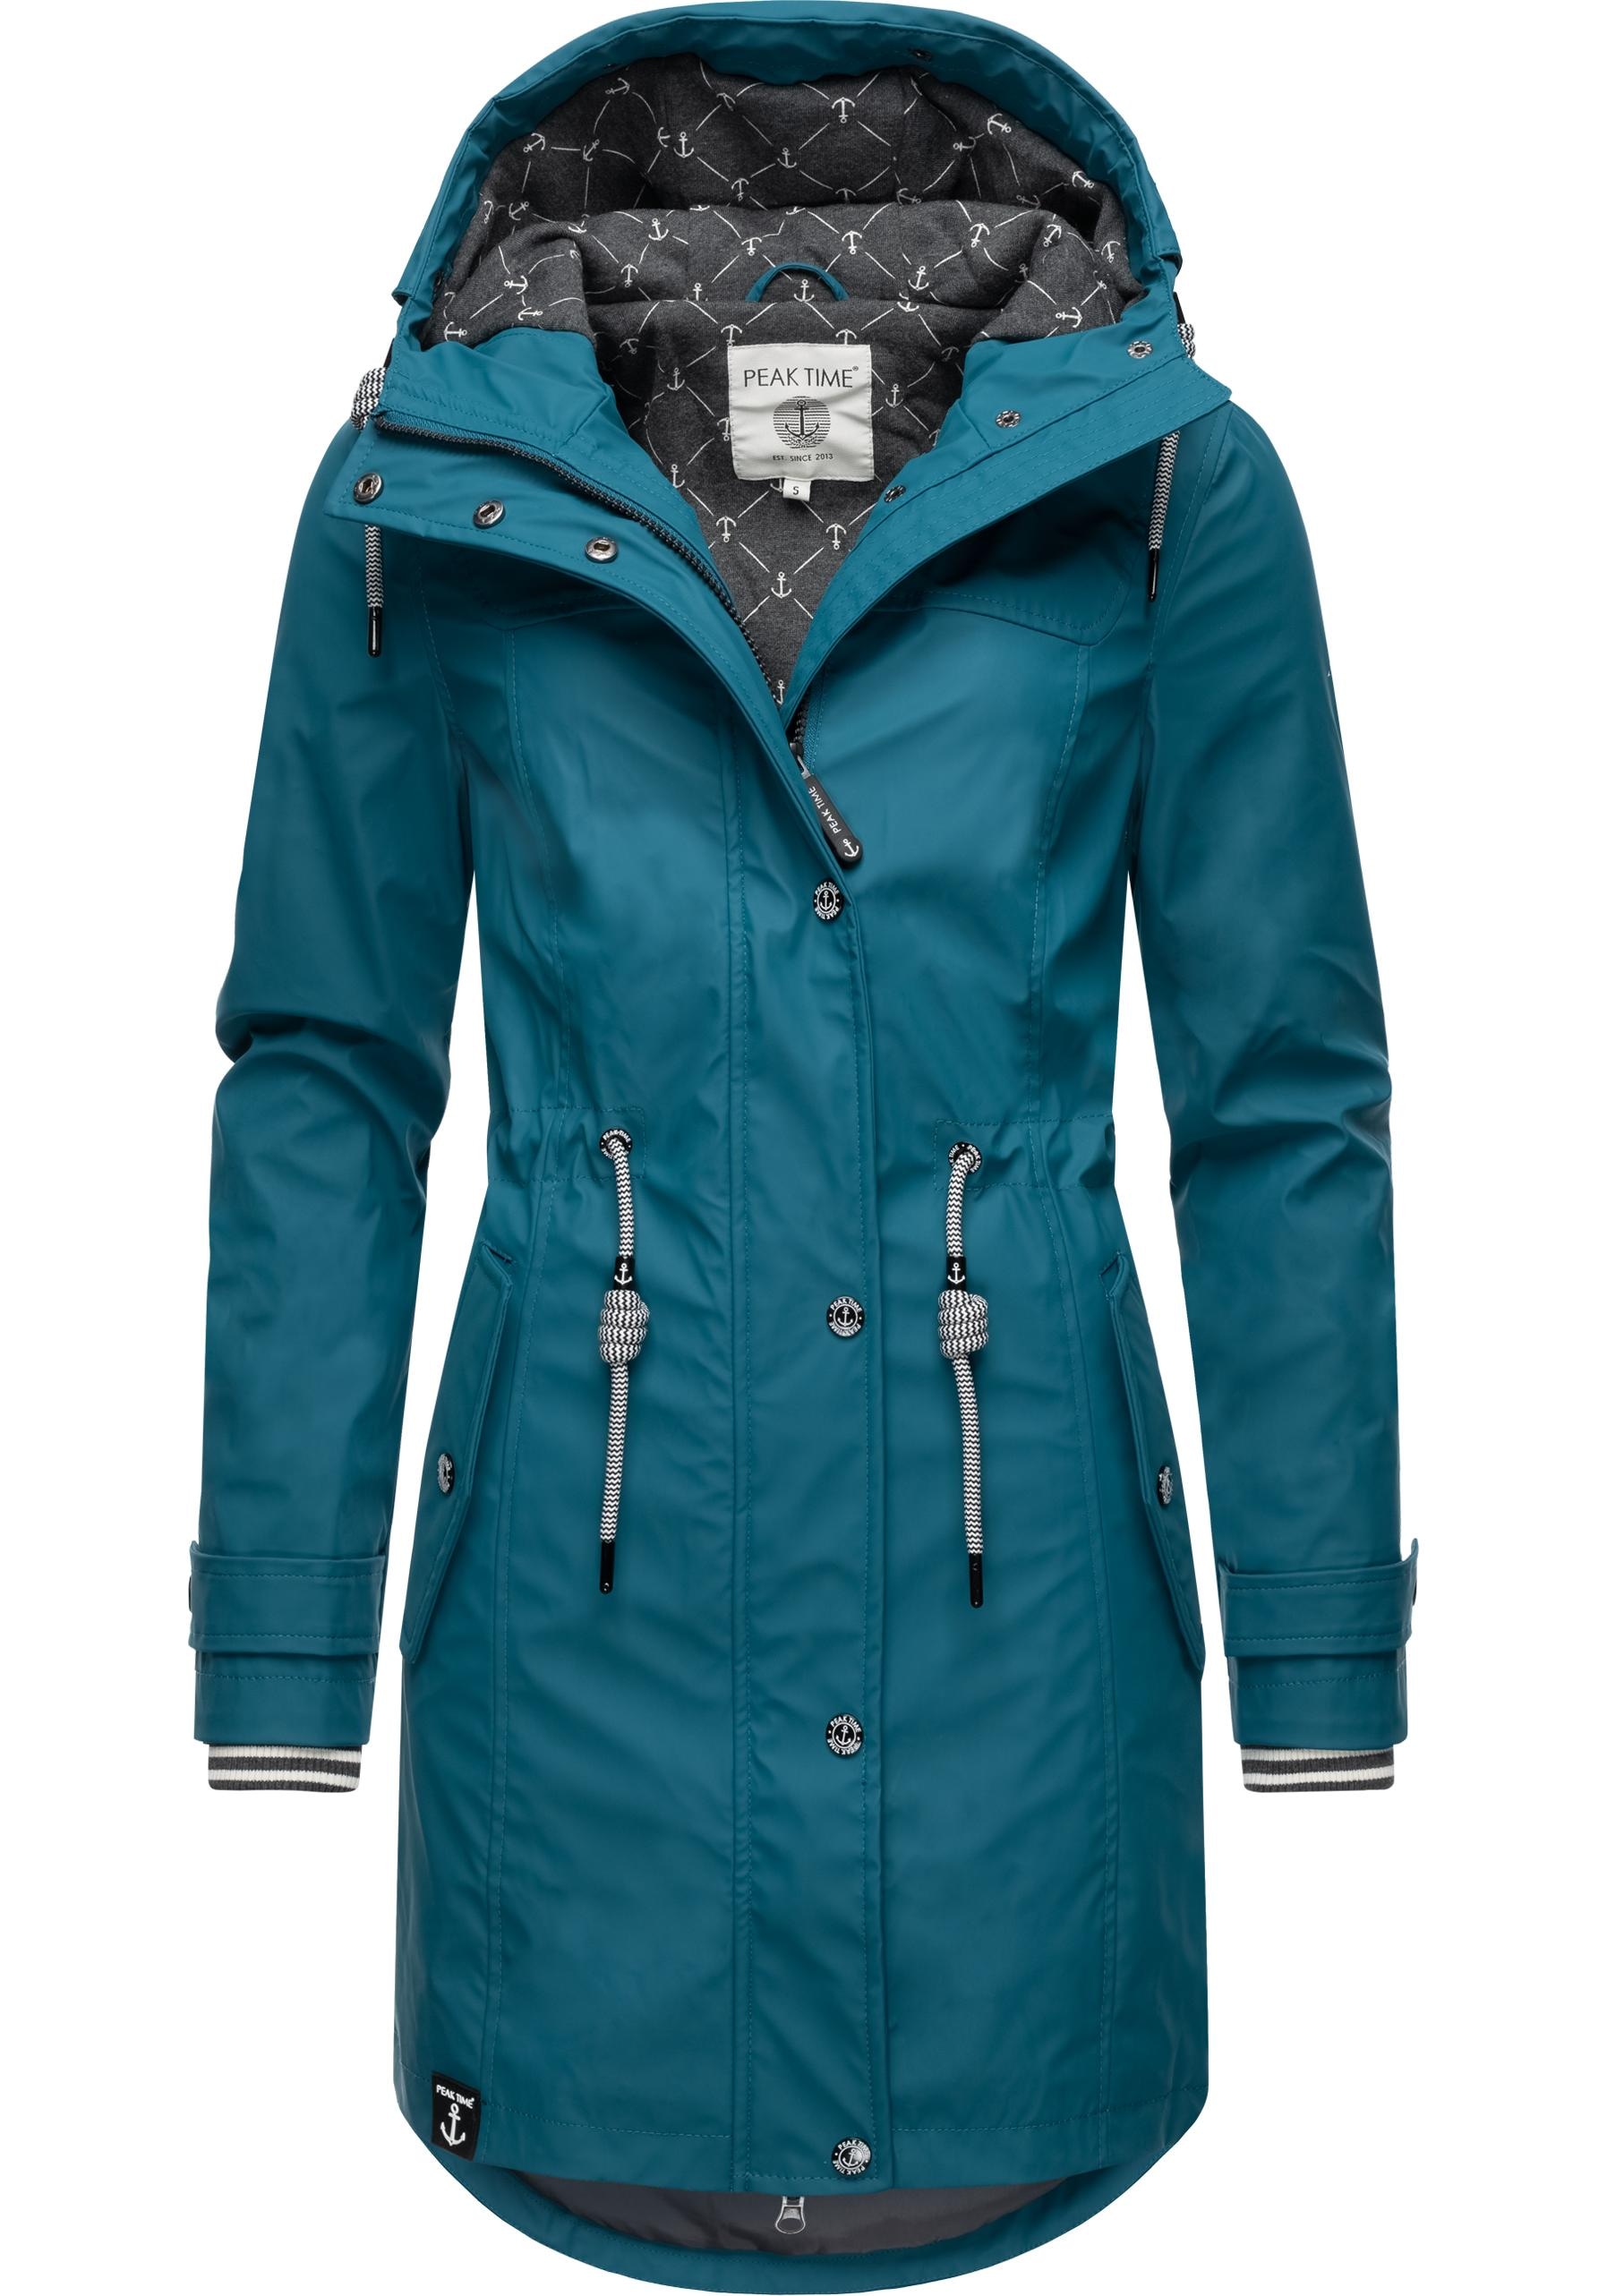 shoppen taillierter mit »L60042«, Kapuze, TIME Regenjacke für Damen PEAK Regenmantel stylisch